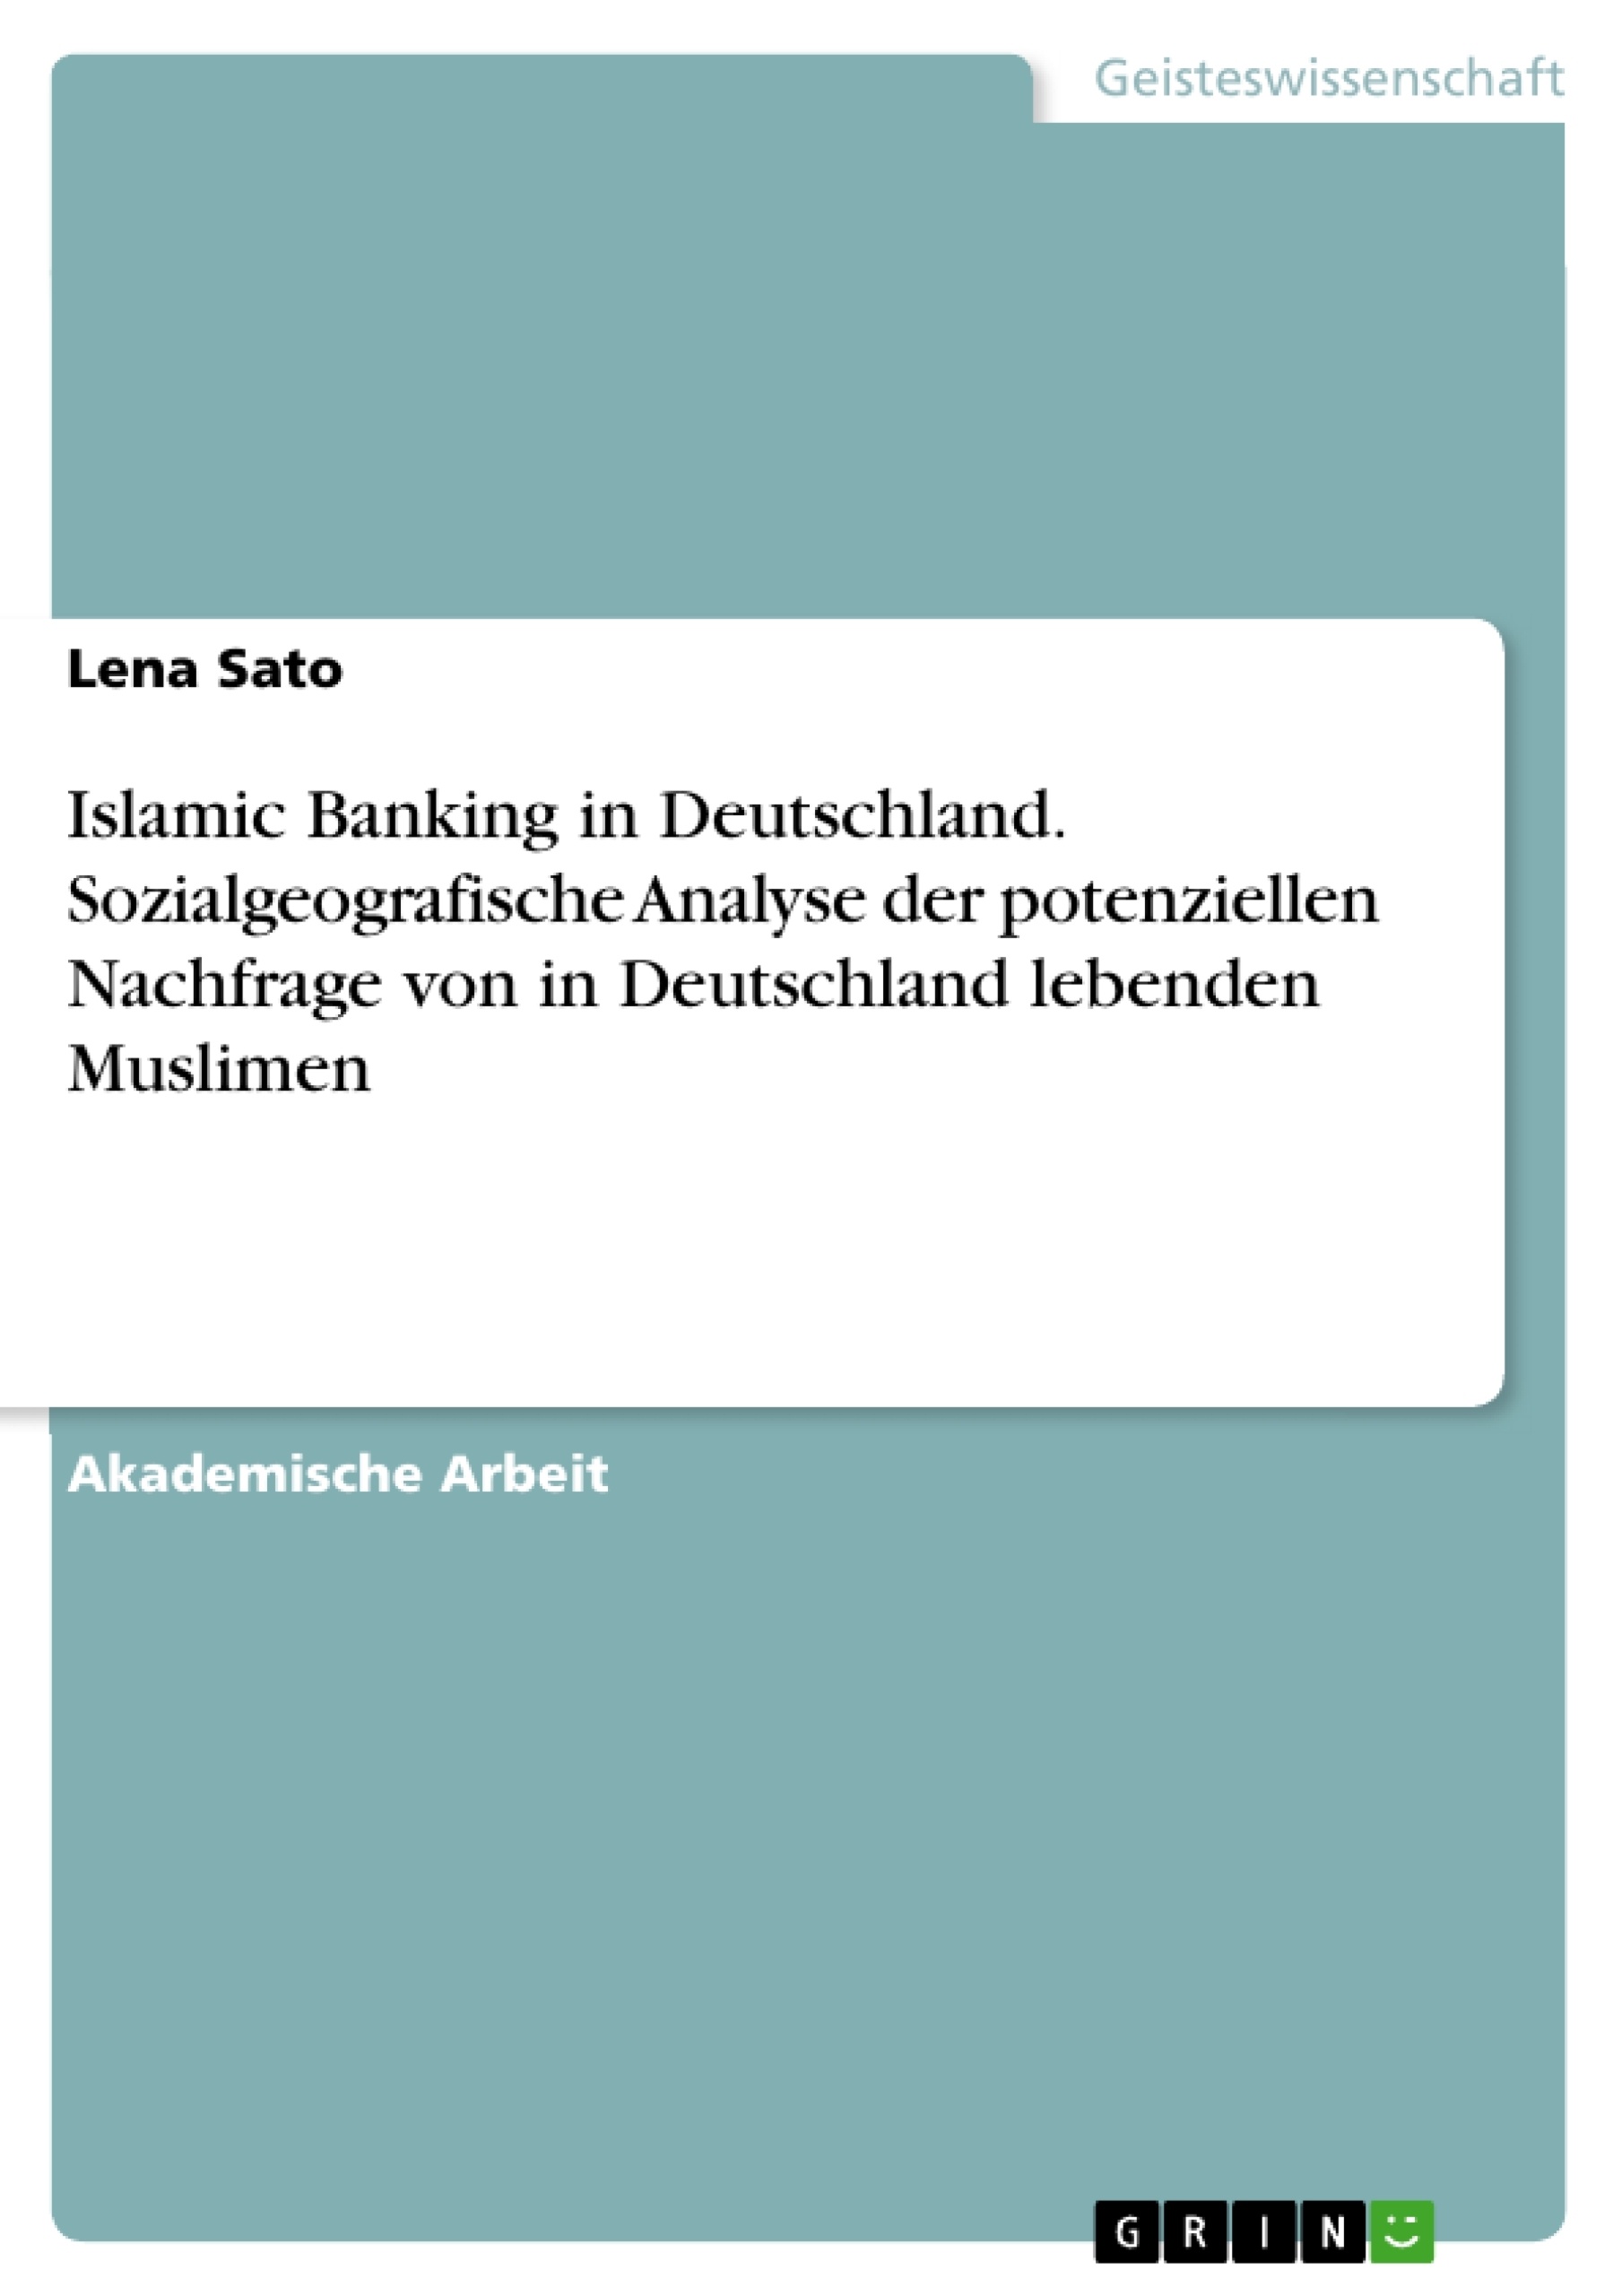 Title: Islamic Banking in Deutschland. Sozialgeografische Analyse der potenziellen Nachfrage von in Deutschland lebenden Muslimen